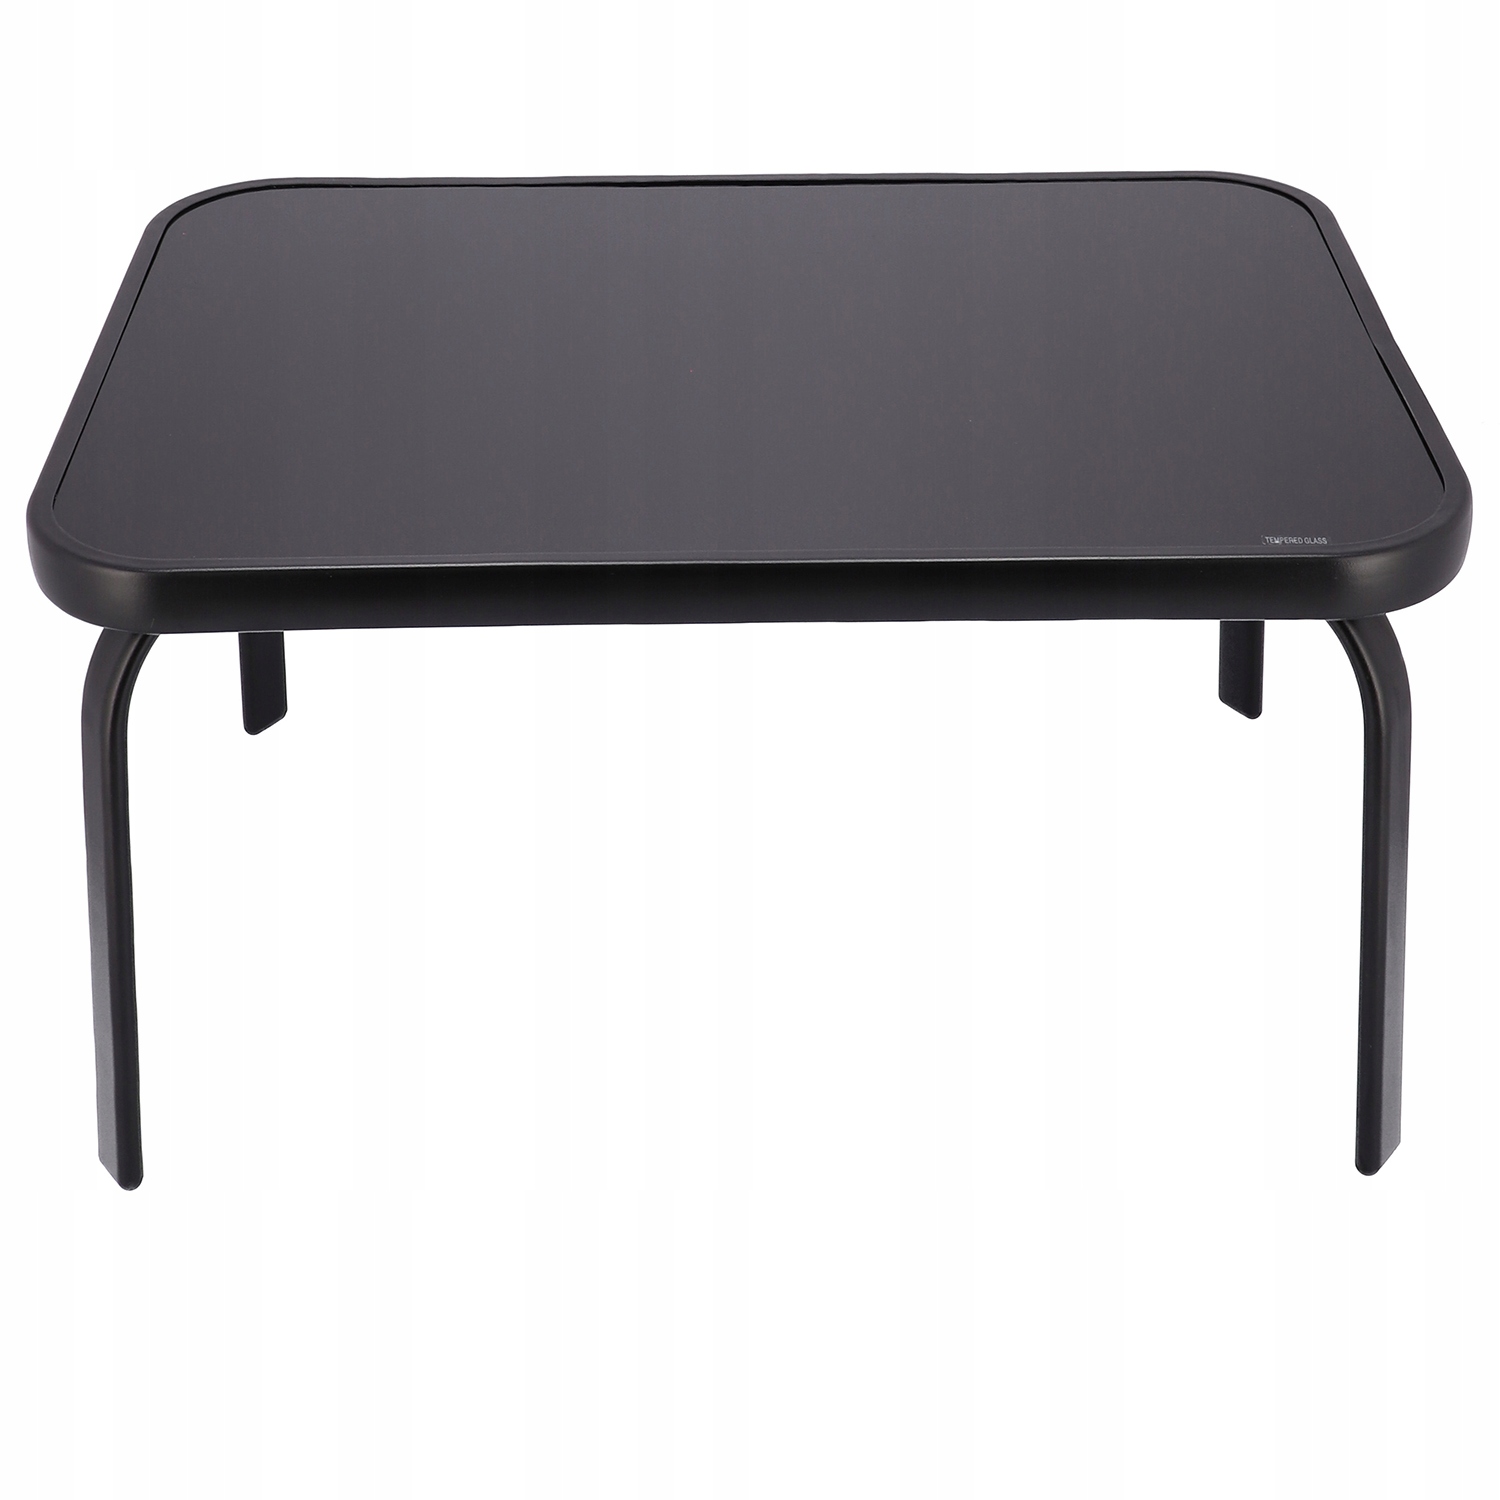 MEBLE OGRODOWE taras zestaw komplet stół krzesł, , OM-967984.5900410967984, Kolor dominujący czarny